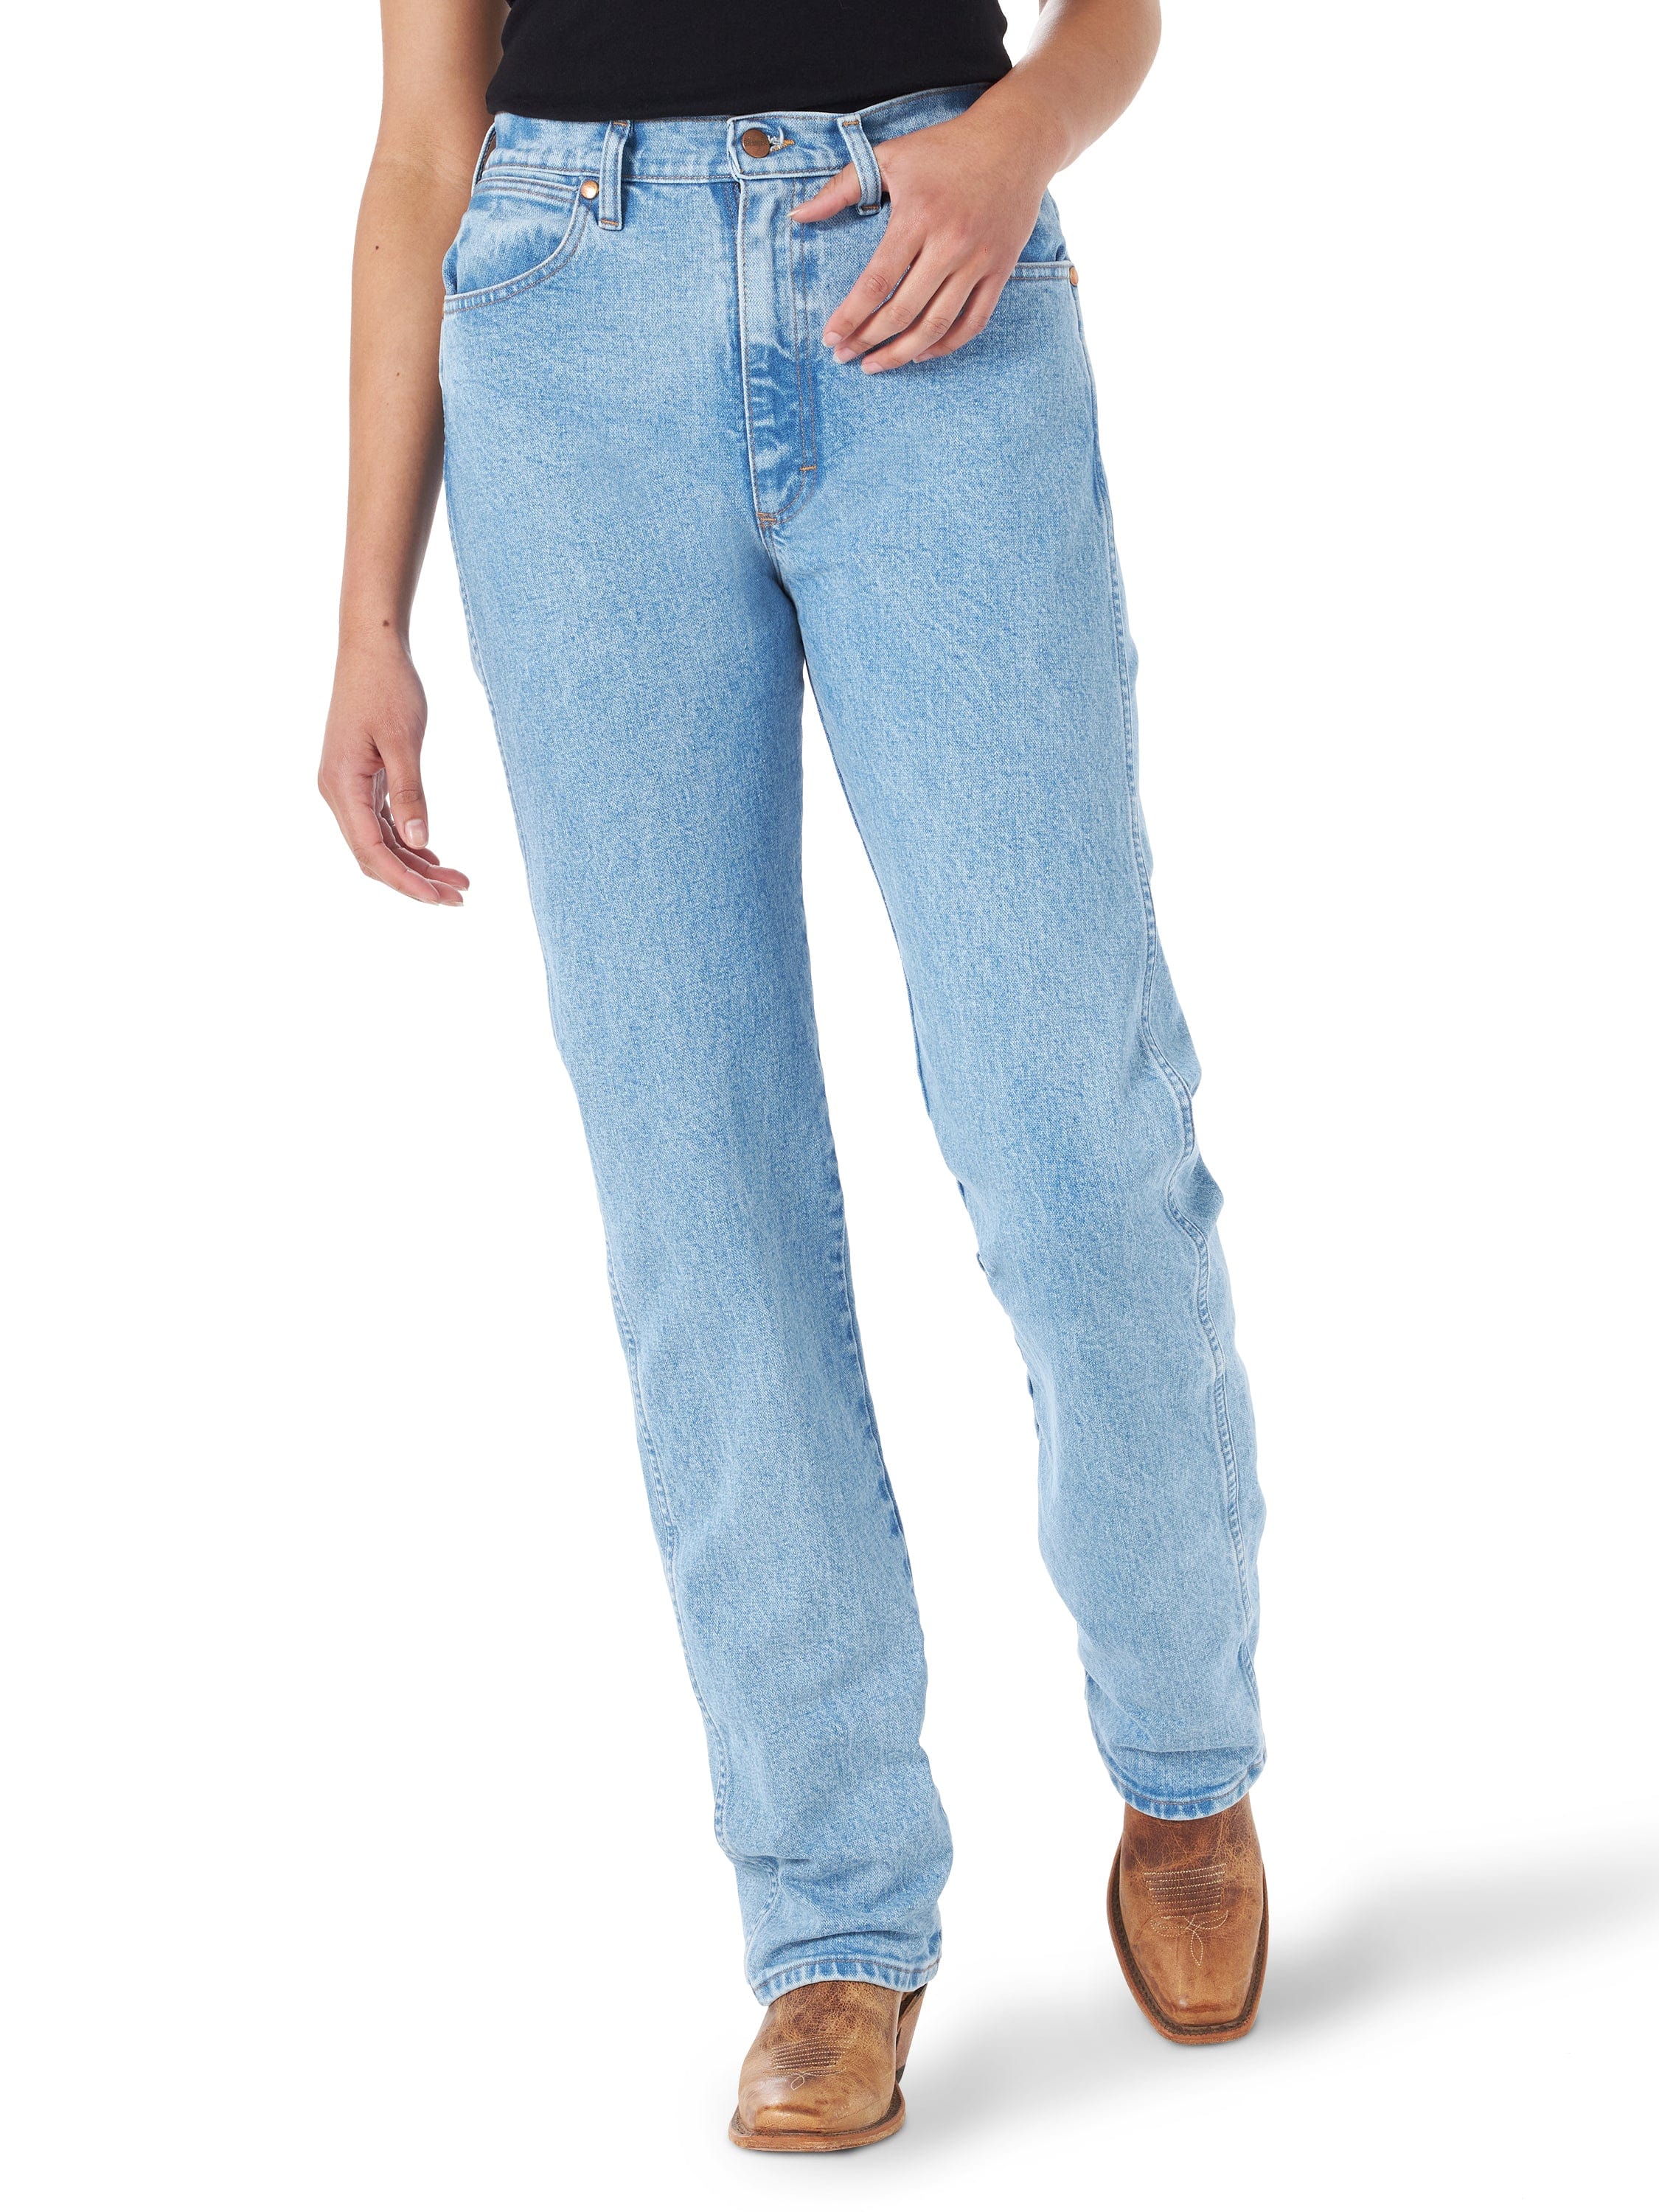 Wrangler Women's Cowgirl Cut Slim Fit High Rise Stretch Jean